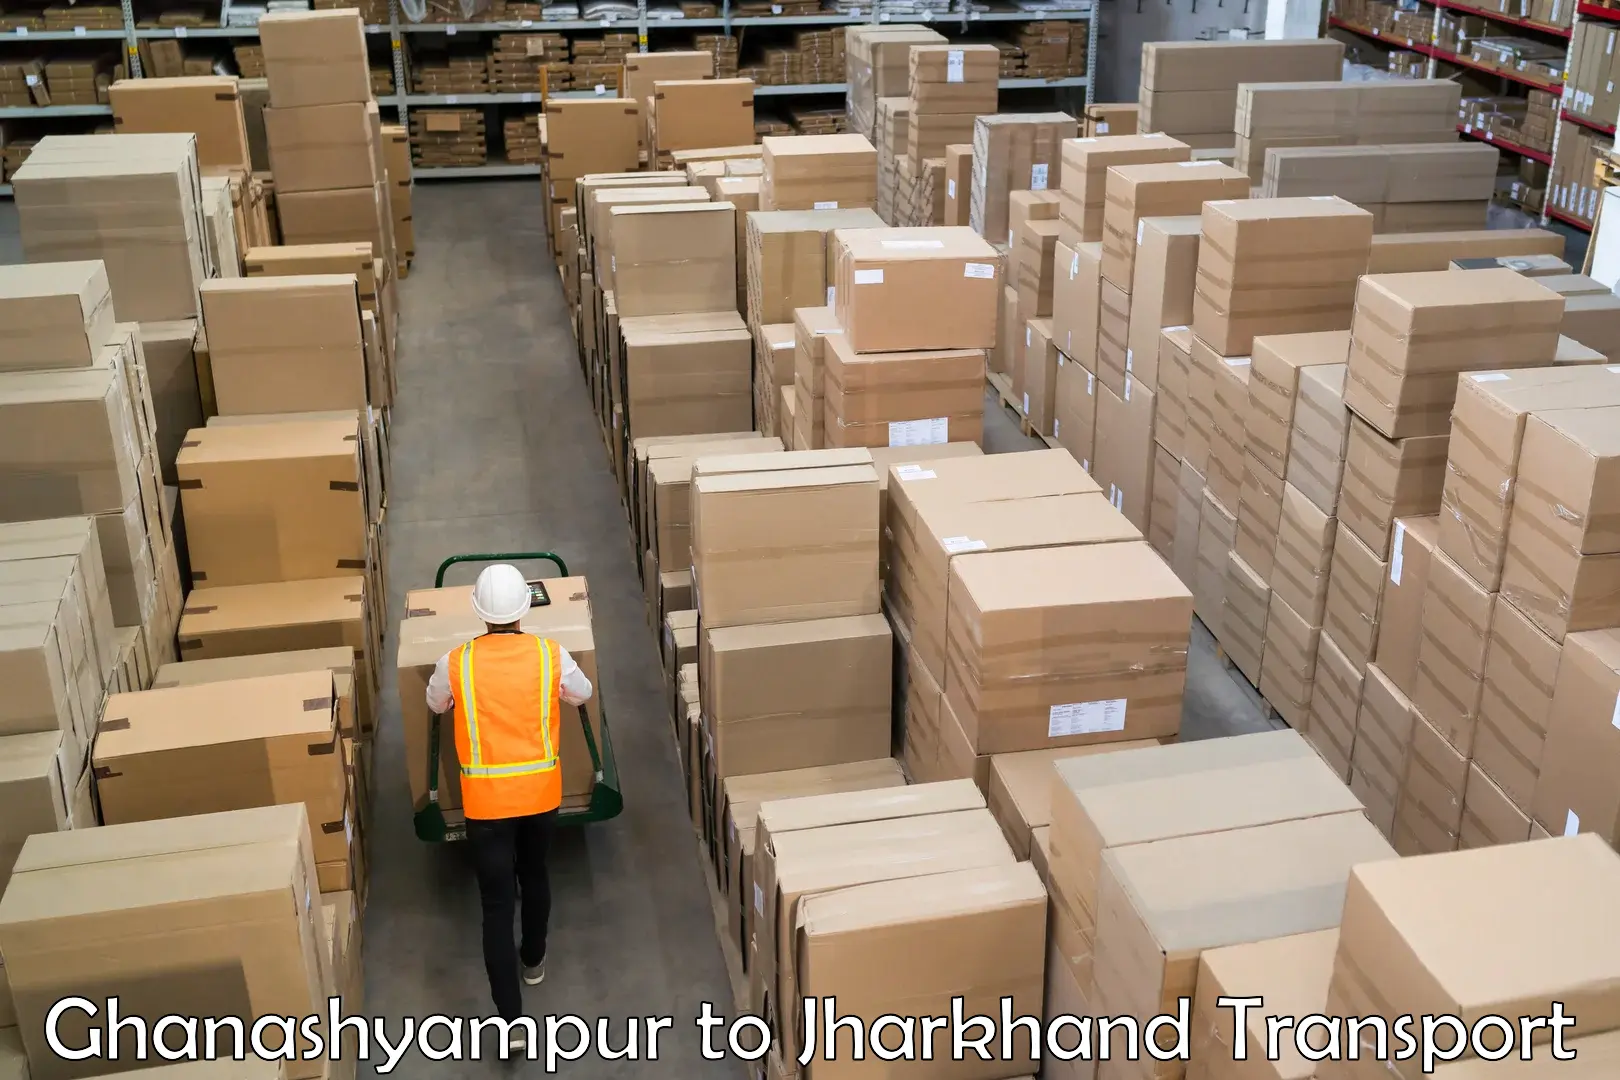 Daily parcel service transport Ghanashyampur to Medininagar